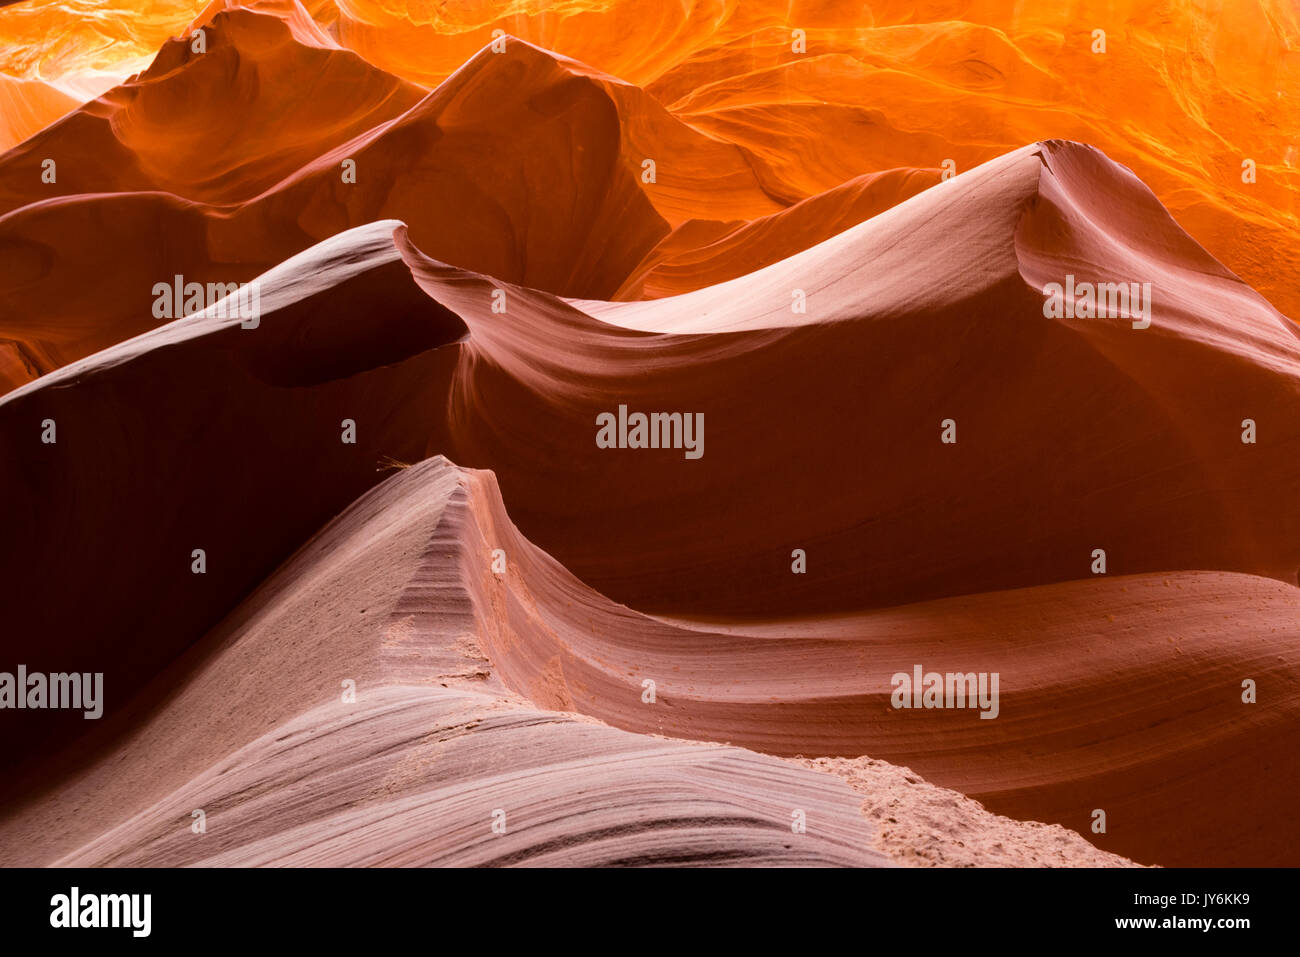 Image d'Antelope Canyon, un slot canyon près de page, arizona sur la réserve indienne navajo. Banque D'Images